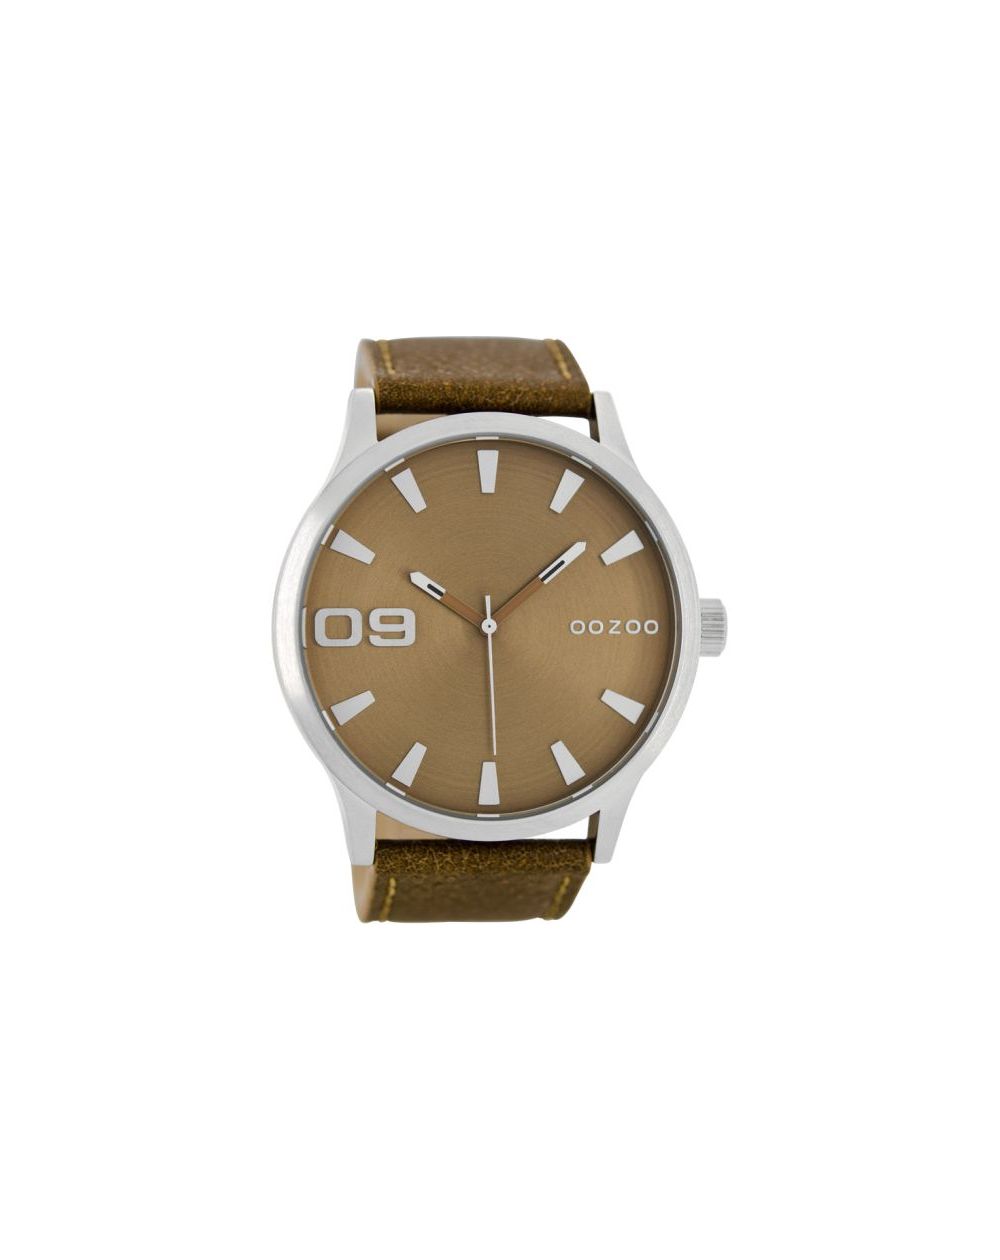 Oozoo montre/watch/horloge C8530